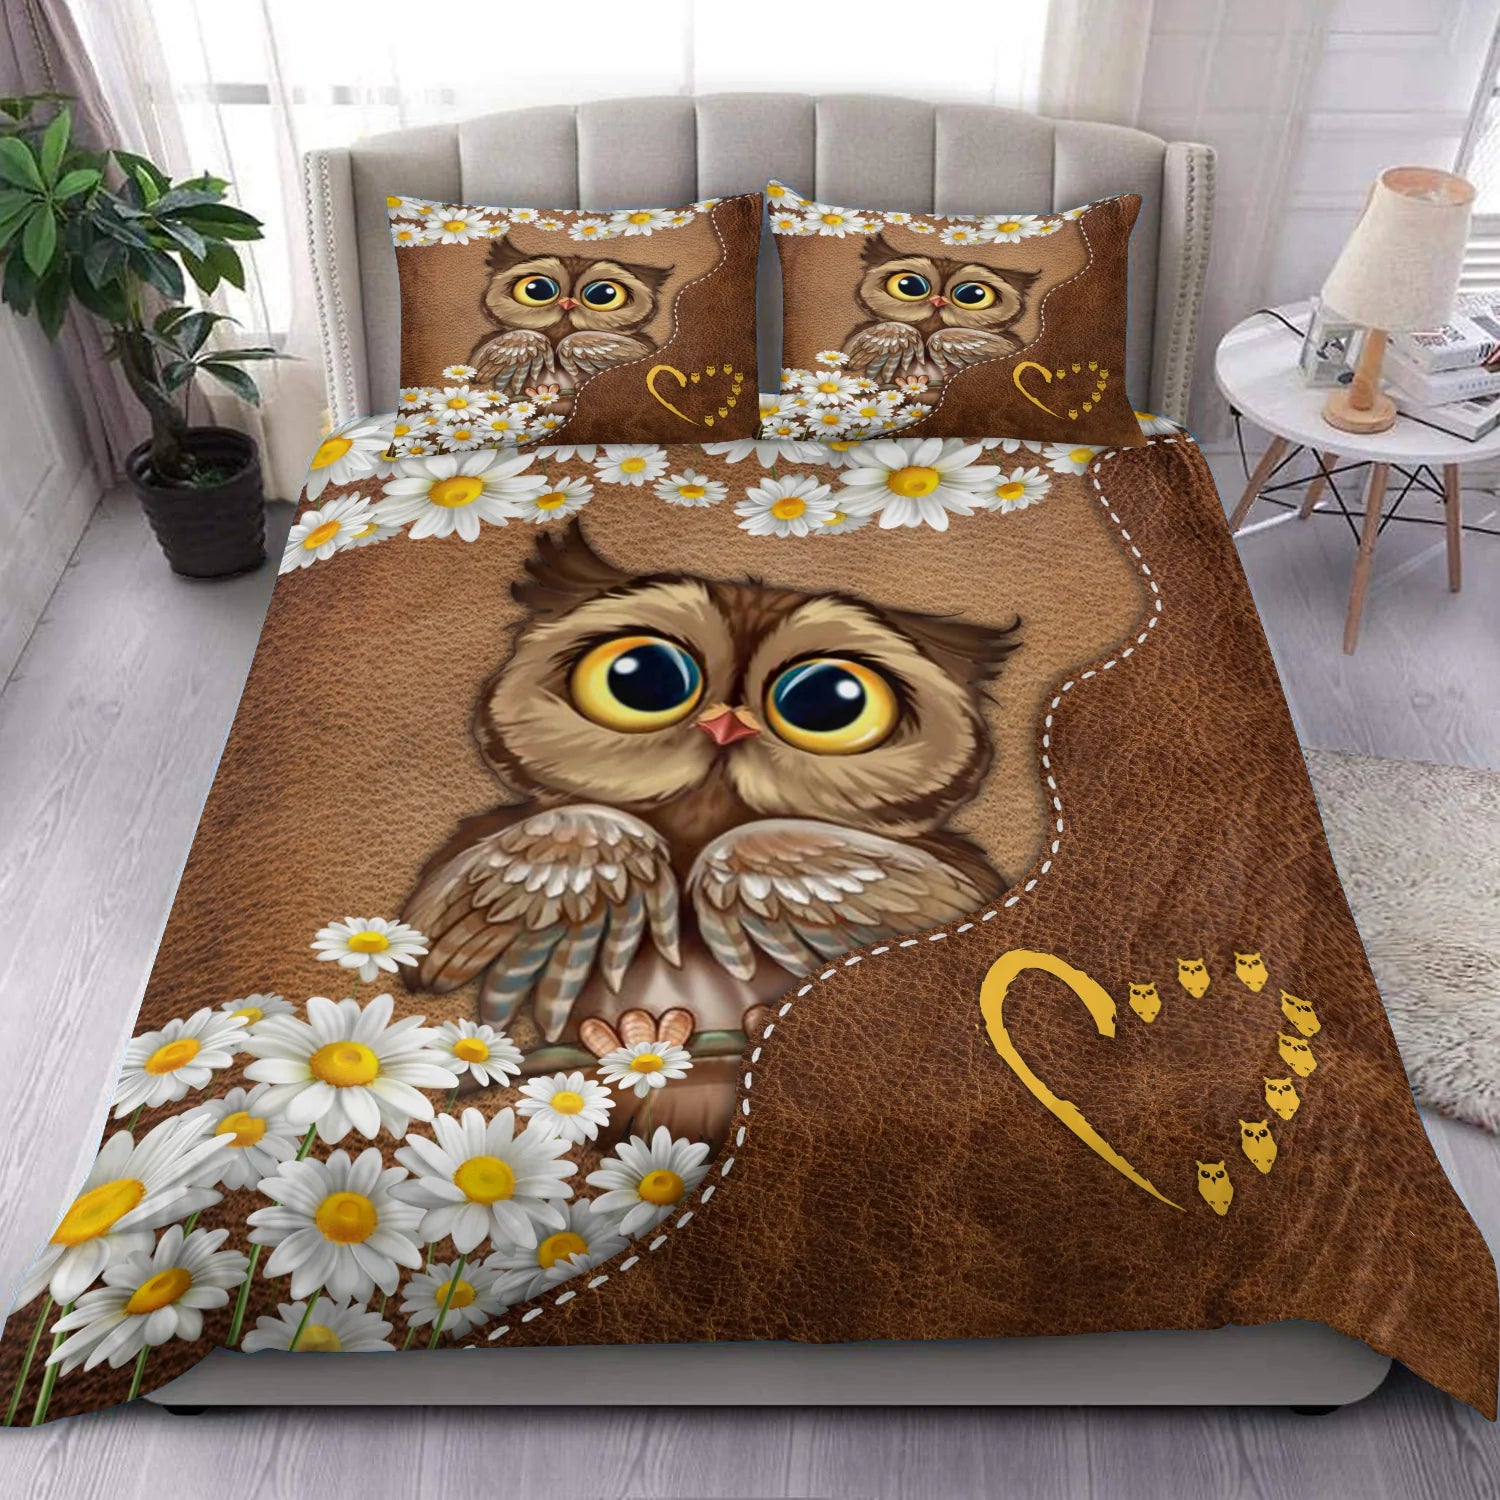 Owl Bedding Set, Gift for Owl Lovers